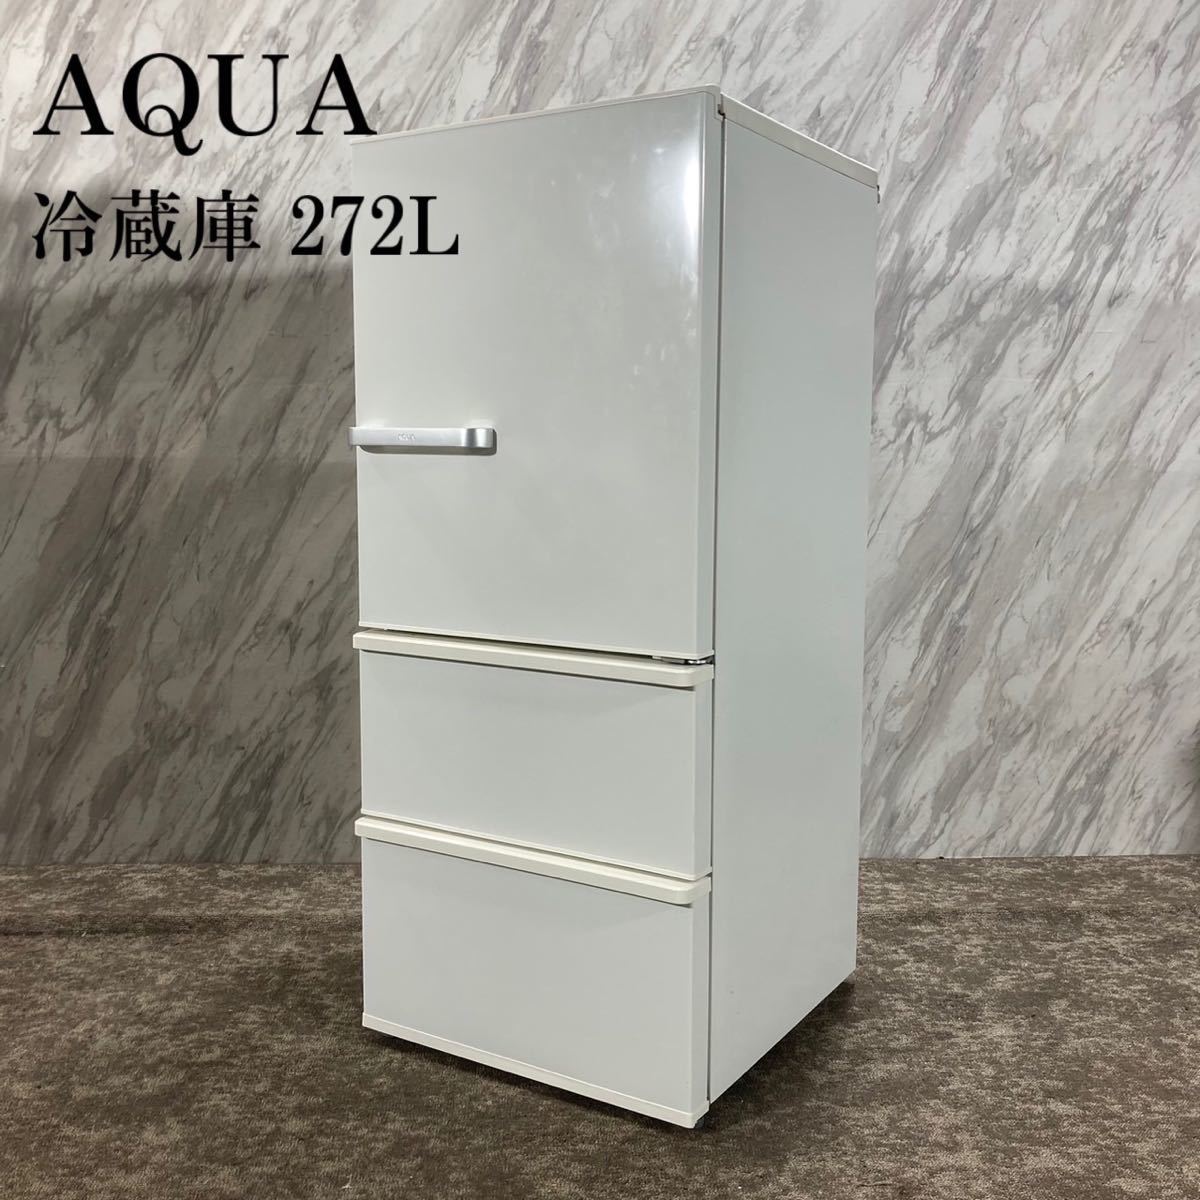 日本産】 冷蔵庫 AQUA AQR-27G(W) K725 家電 2018年製 272L 200